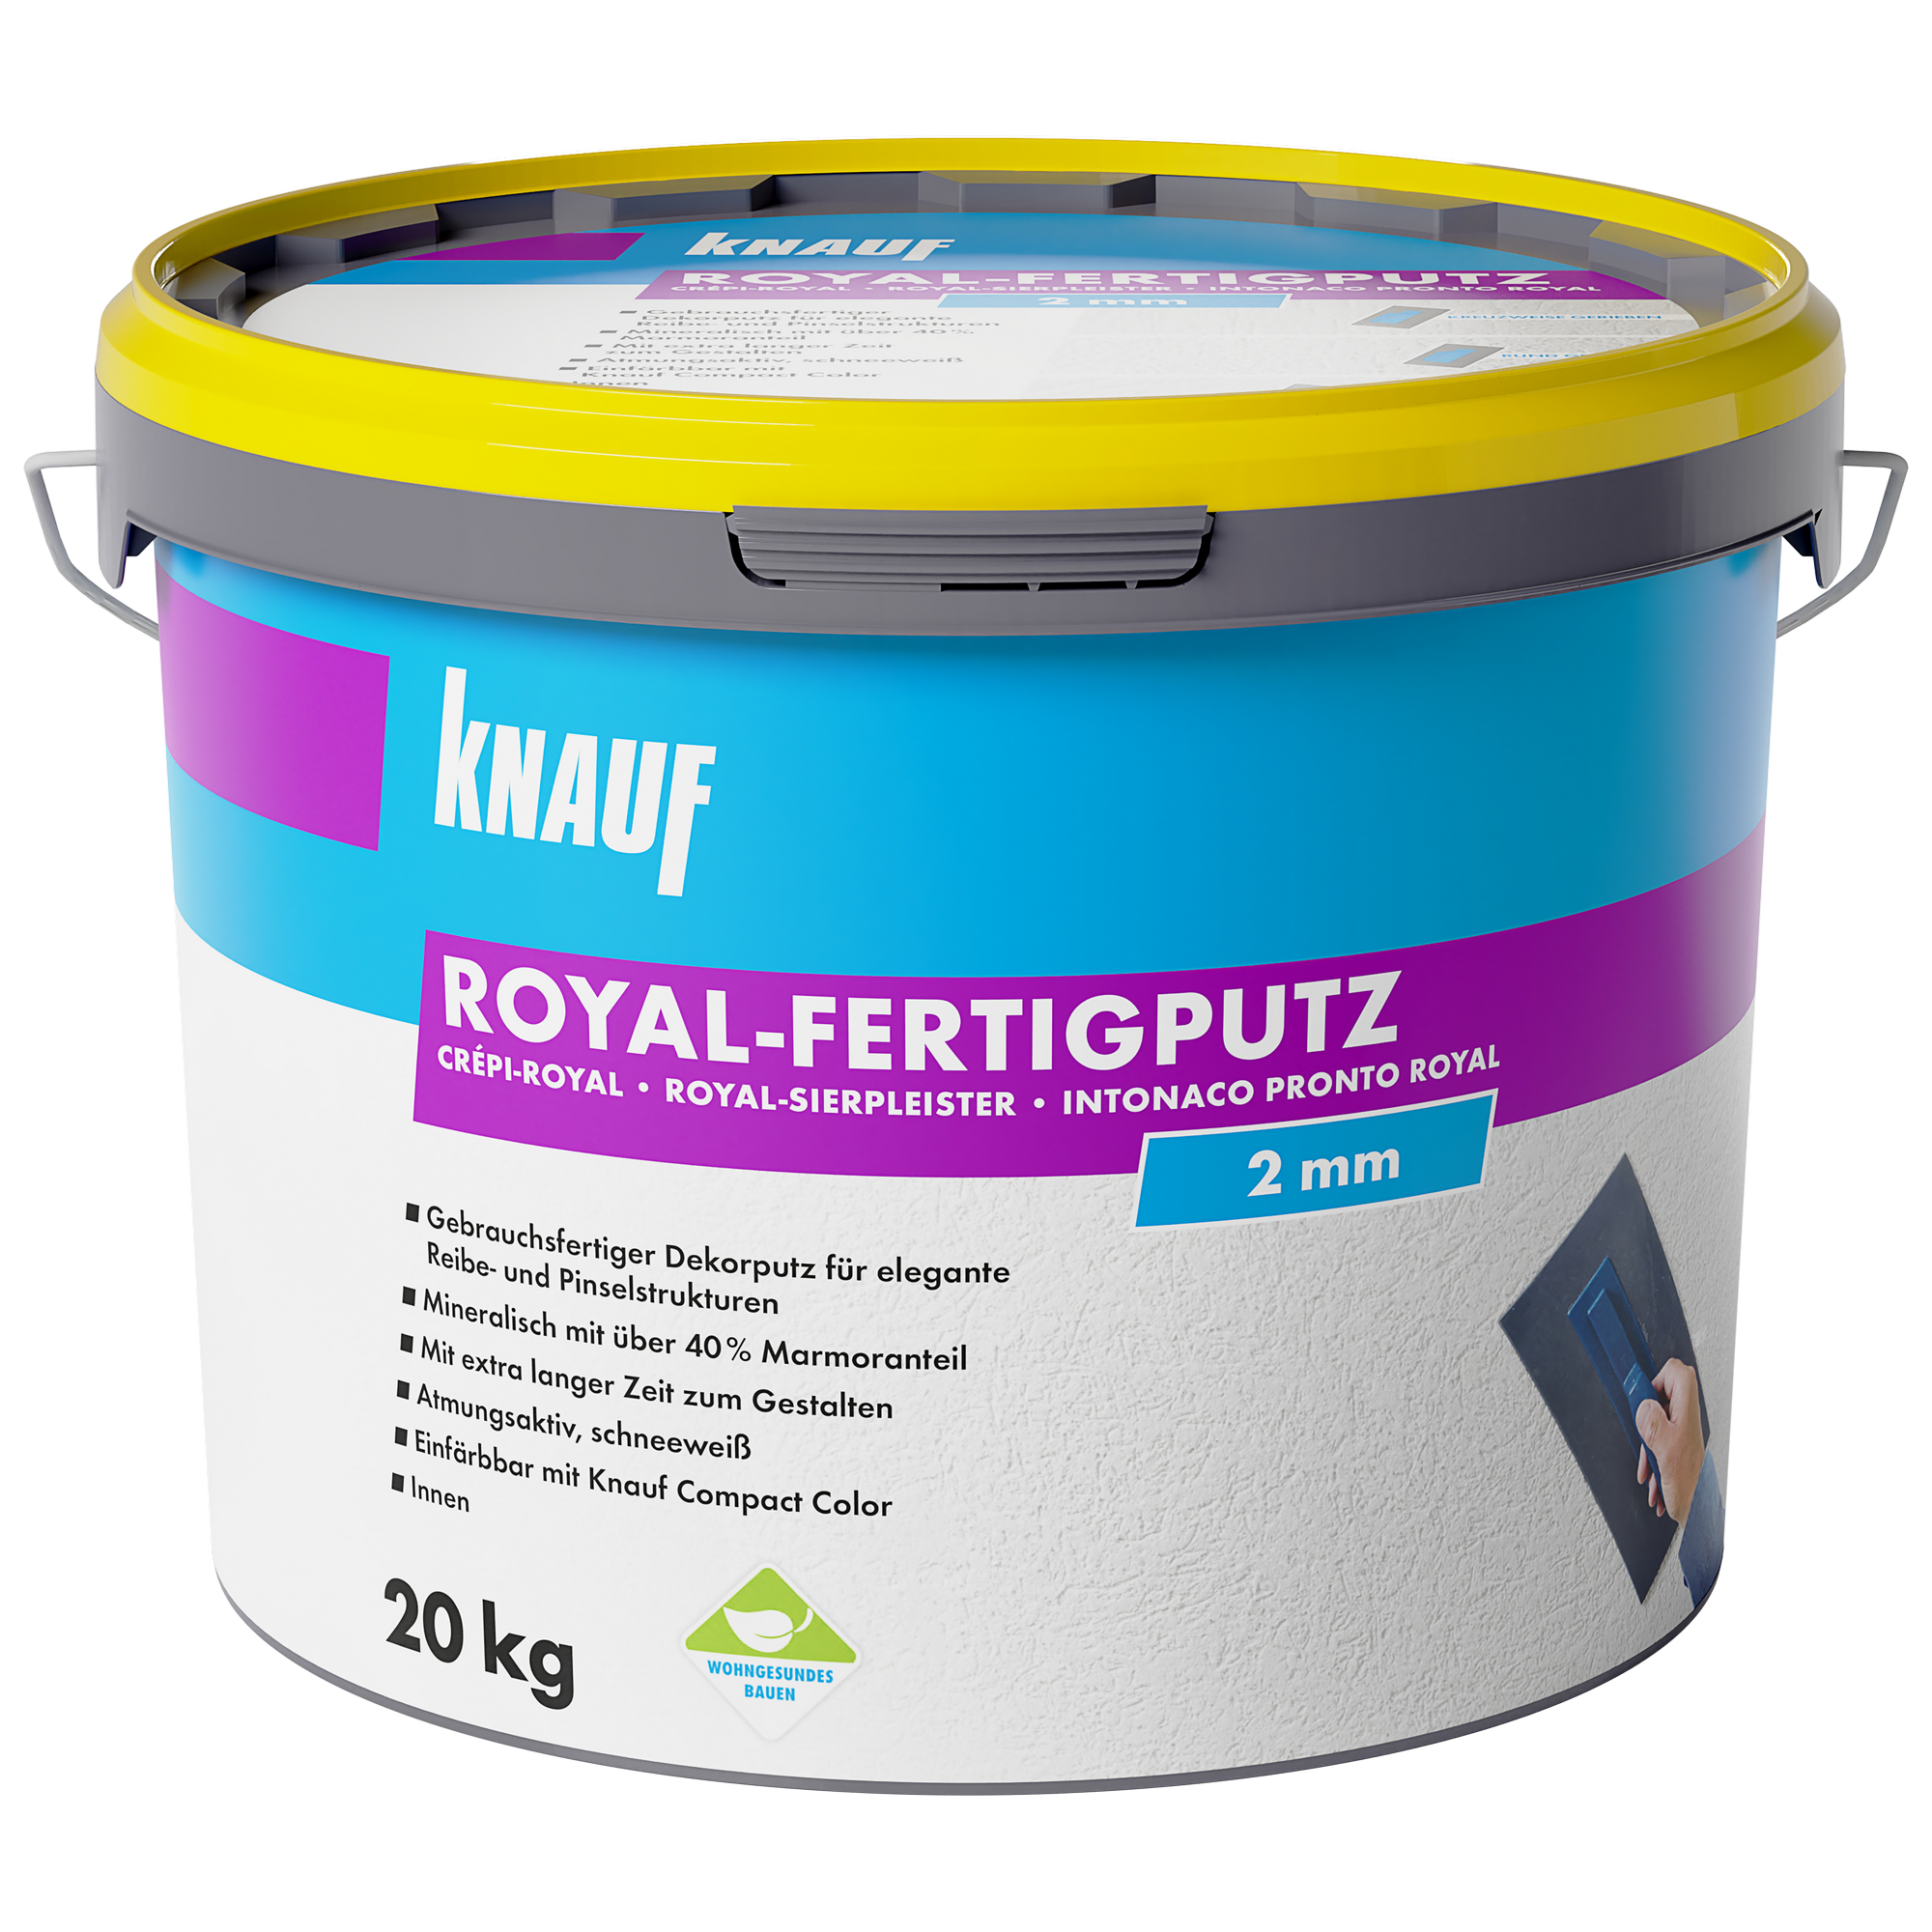 Royal-Fertigputz 'Royal' 20 kg + product picture